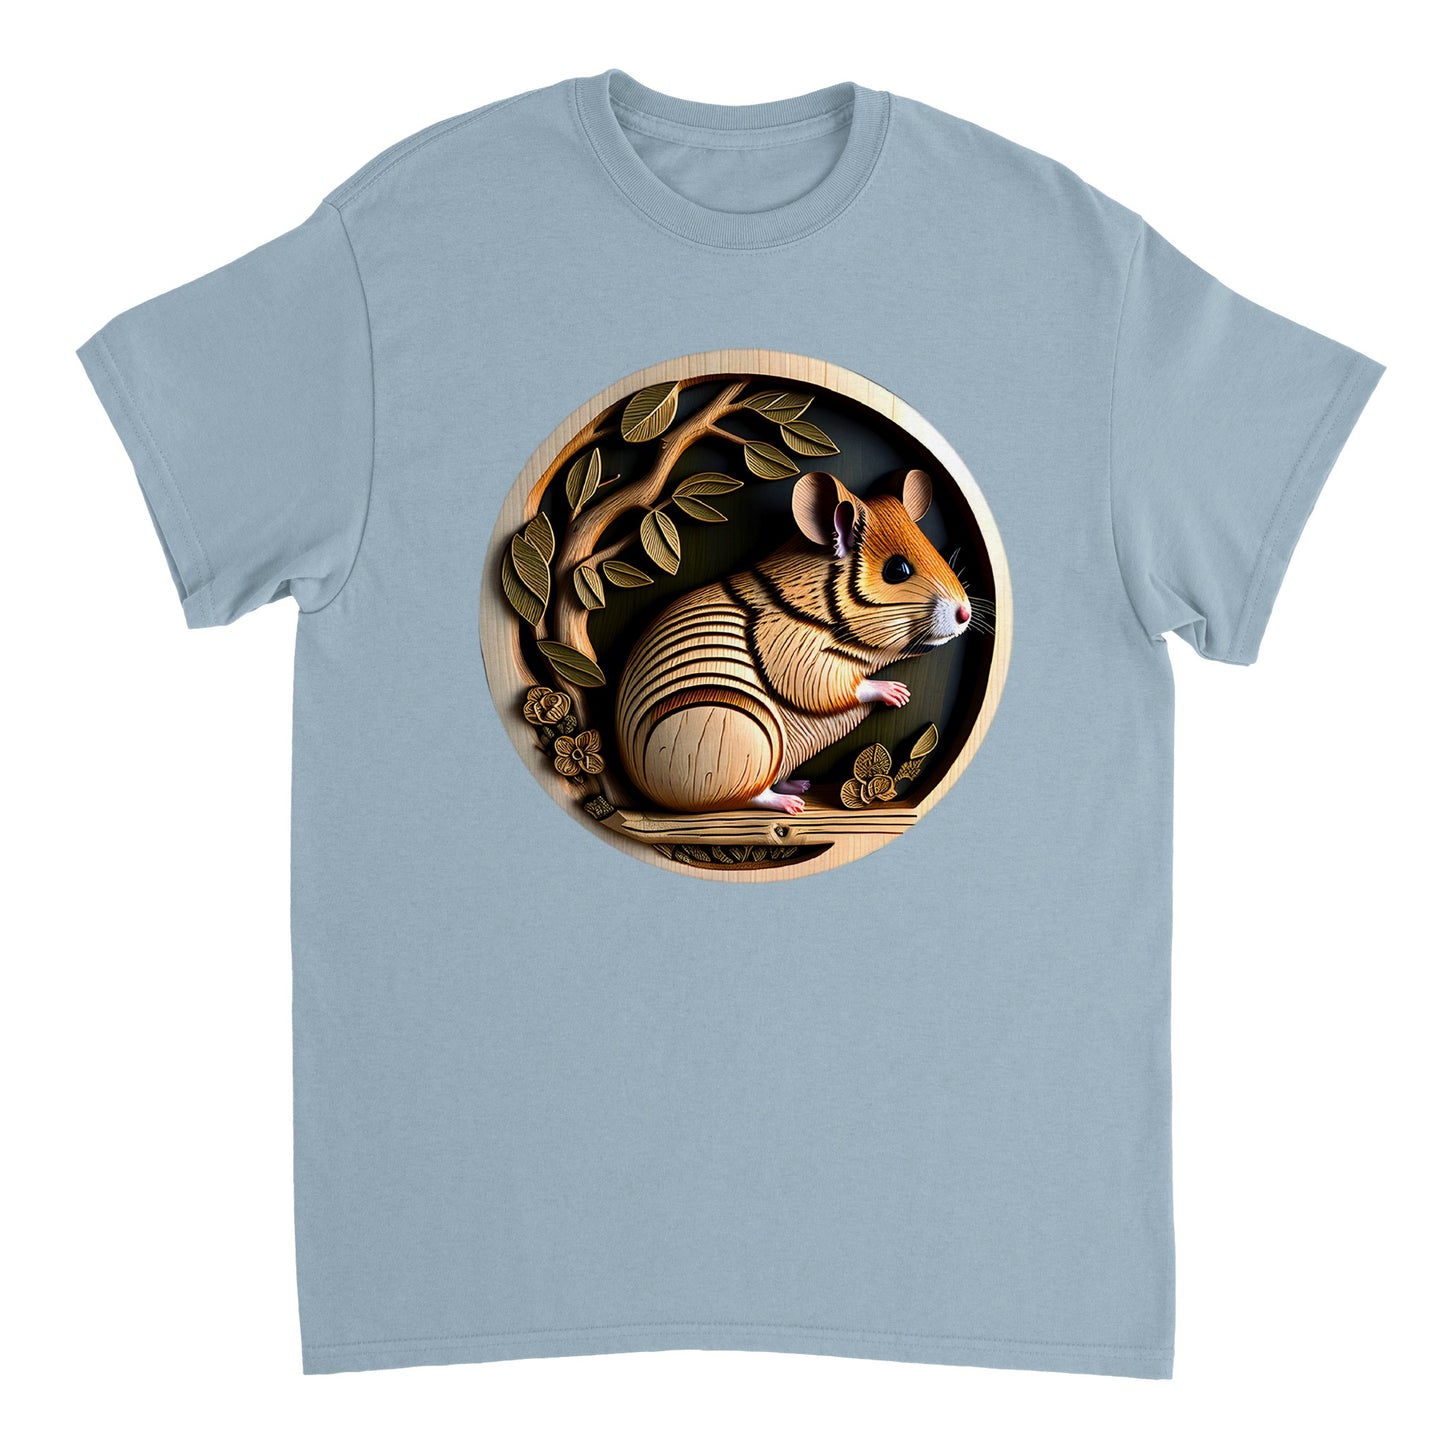 3D Wooden Animal Art - Heavyweight Unisex Crewneck T-shirt 20